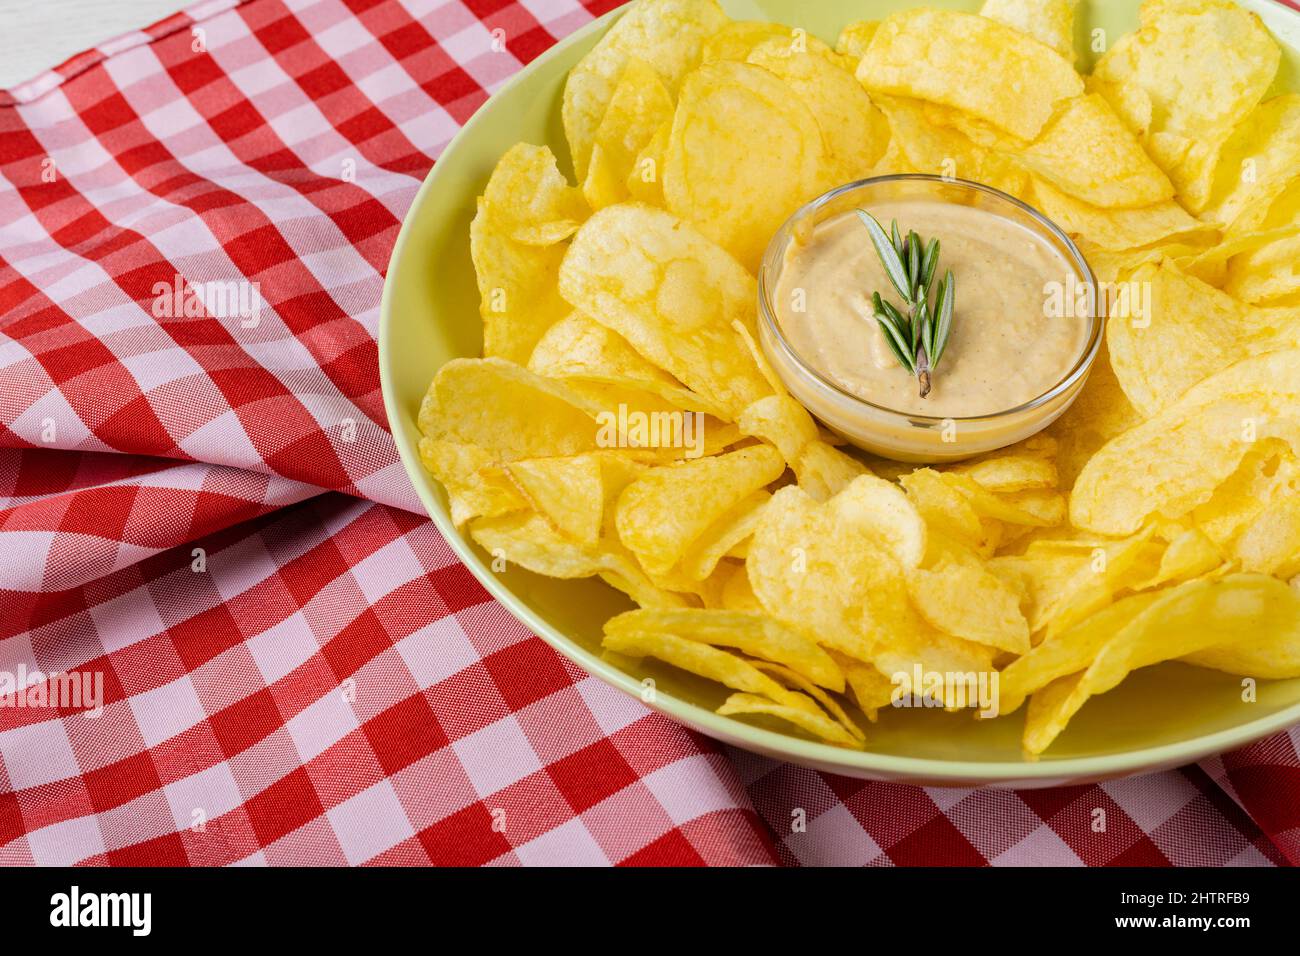 Nahaufnahme der Sauce inmitten von Kartoffelchips, die auf dem Teller auf karierter Serviette am Tisch serviert werden Stockfoto